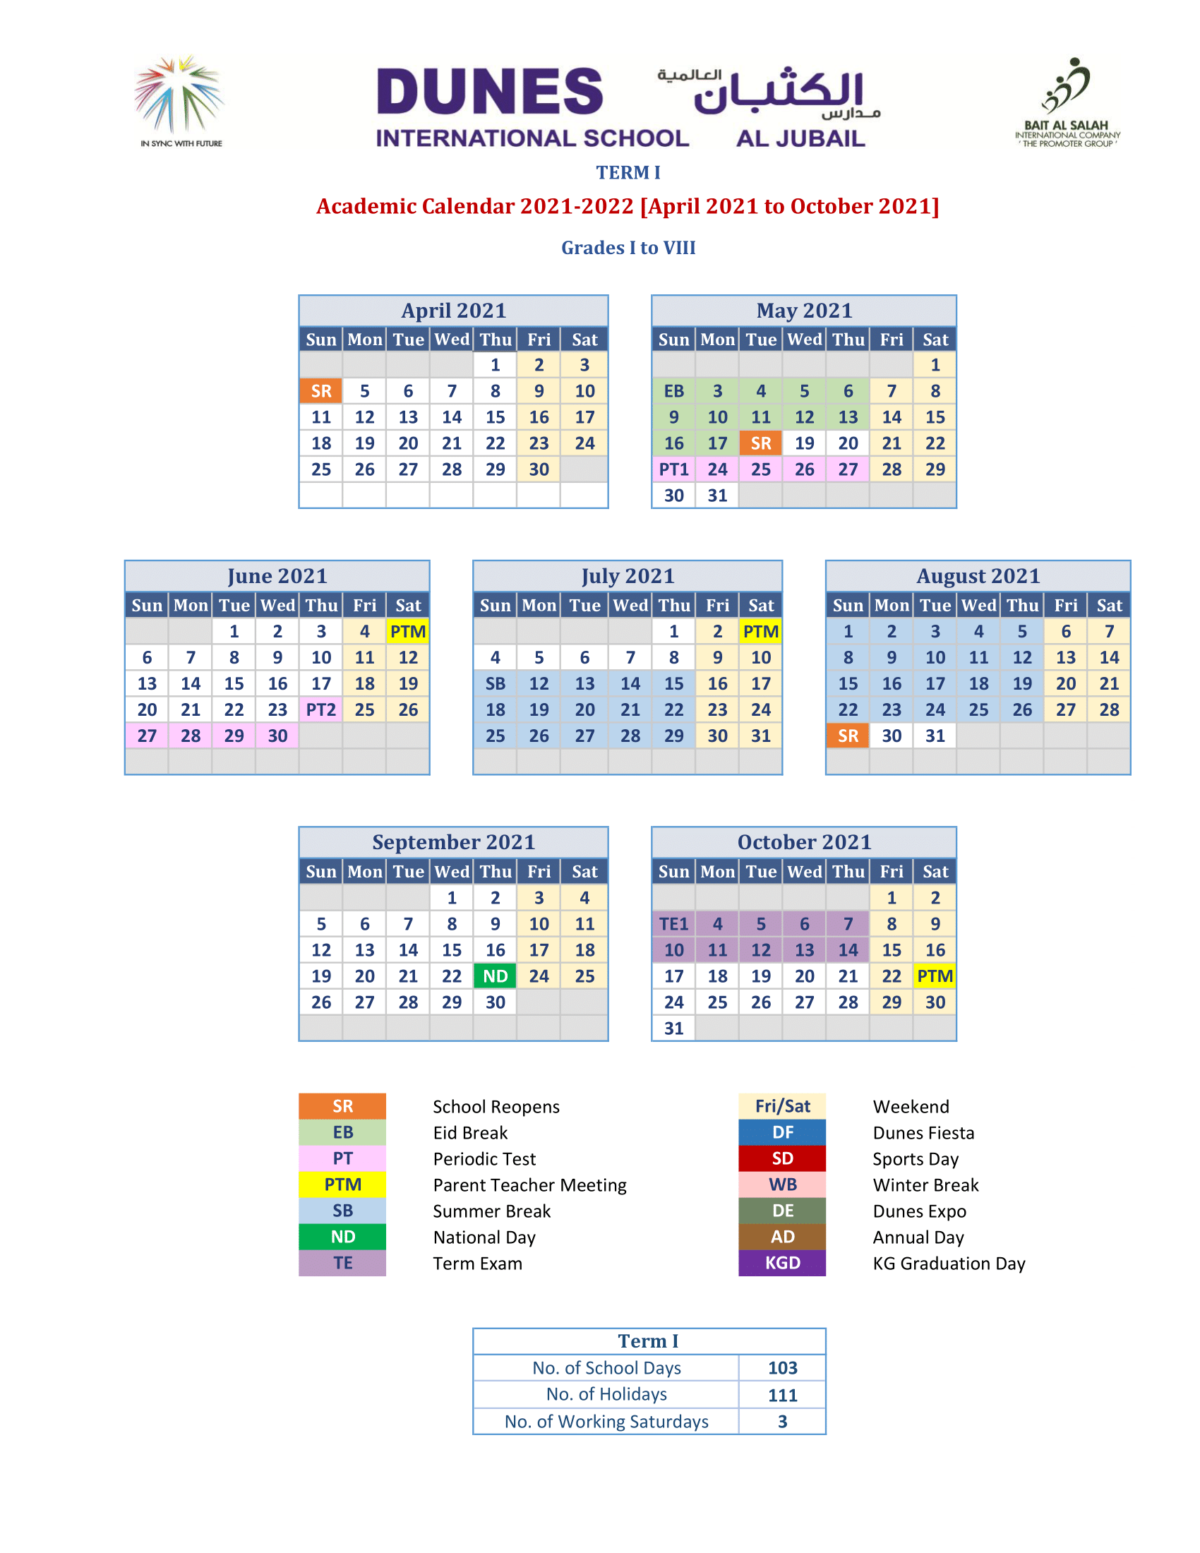 Academic Calendar Dunes Internationals School